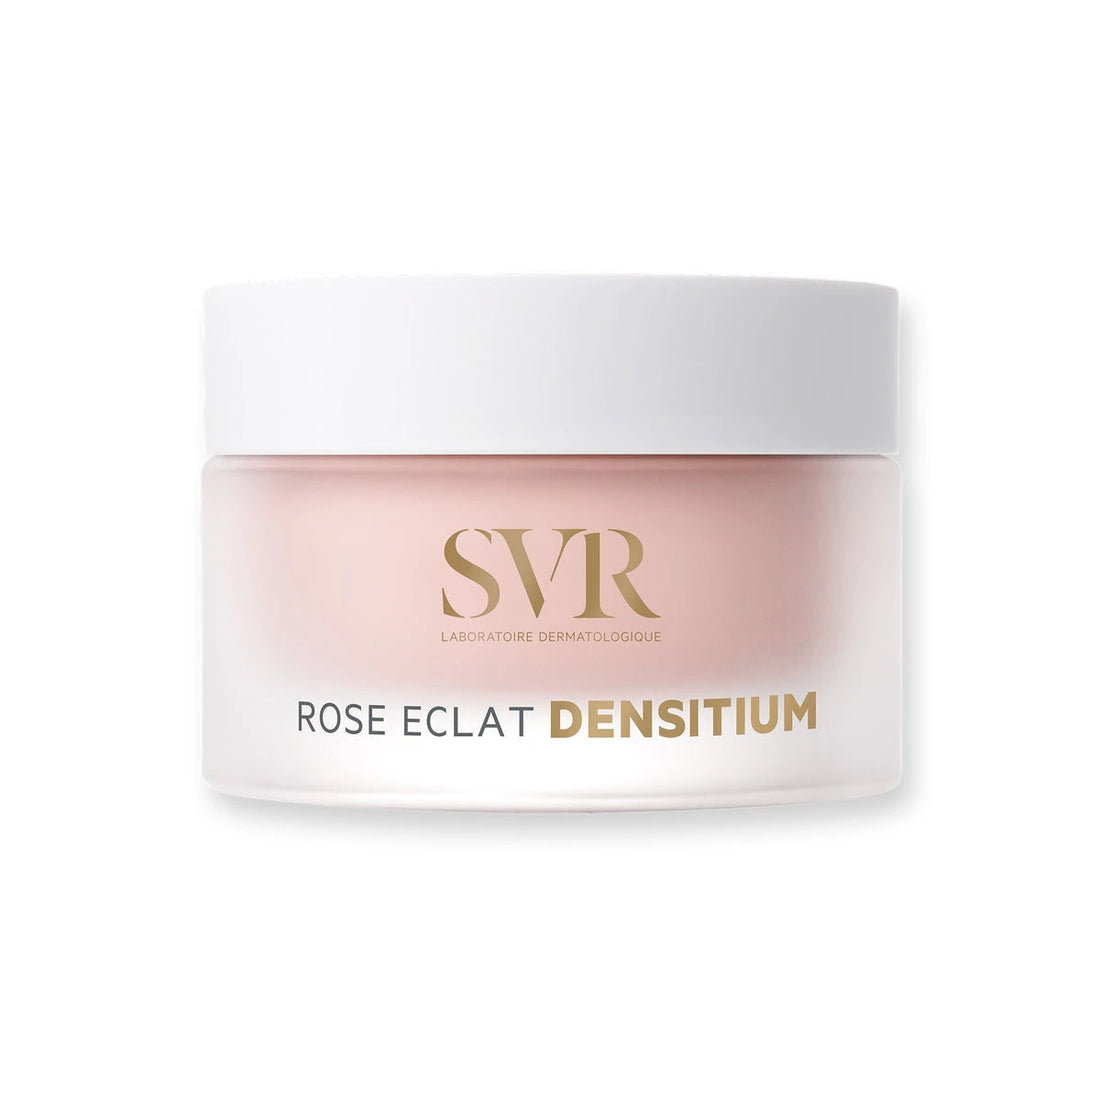 SVR Densitium Rose eclat cream 50ml